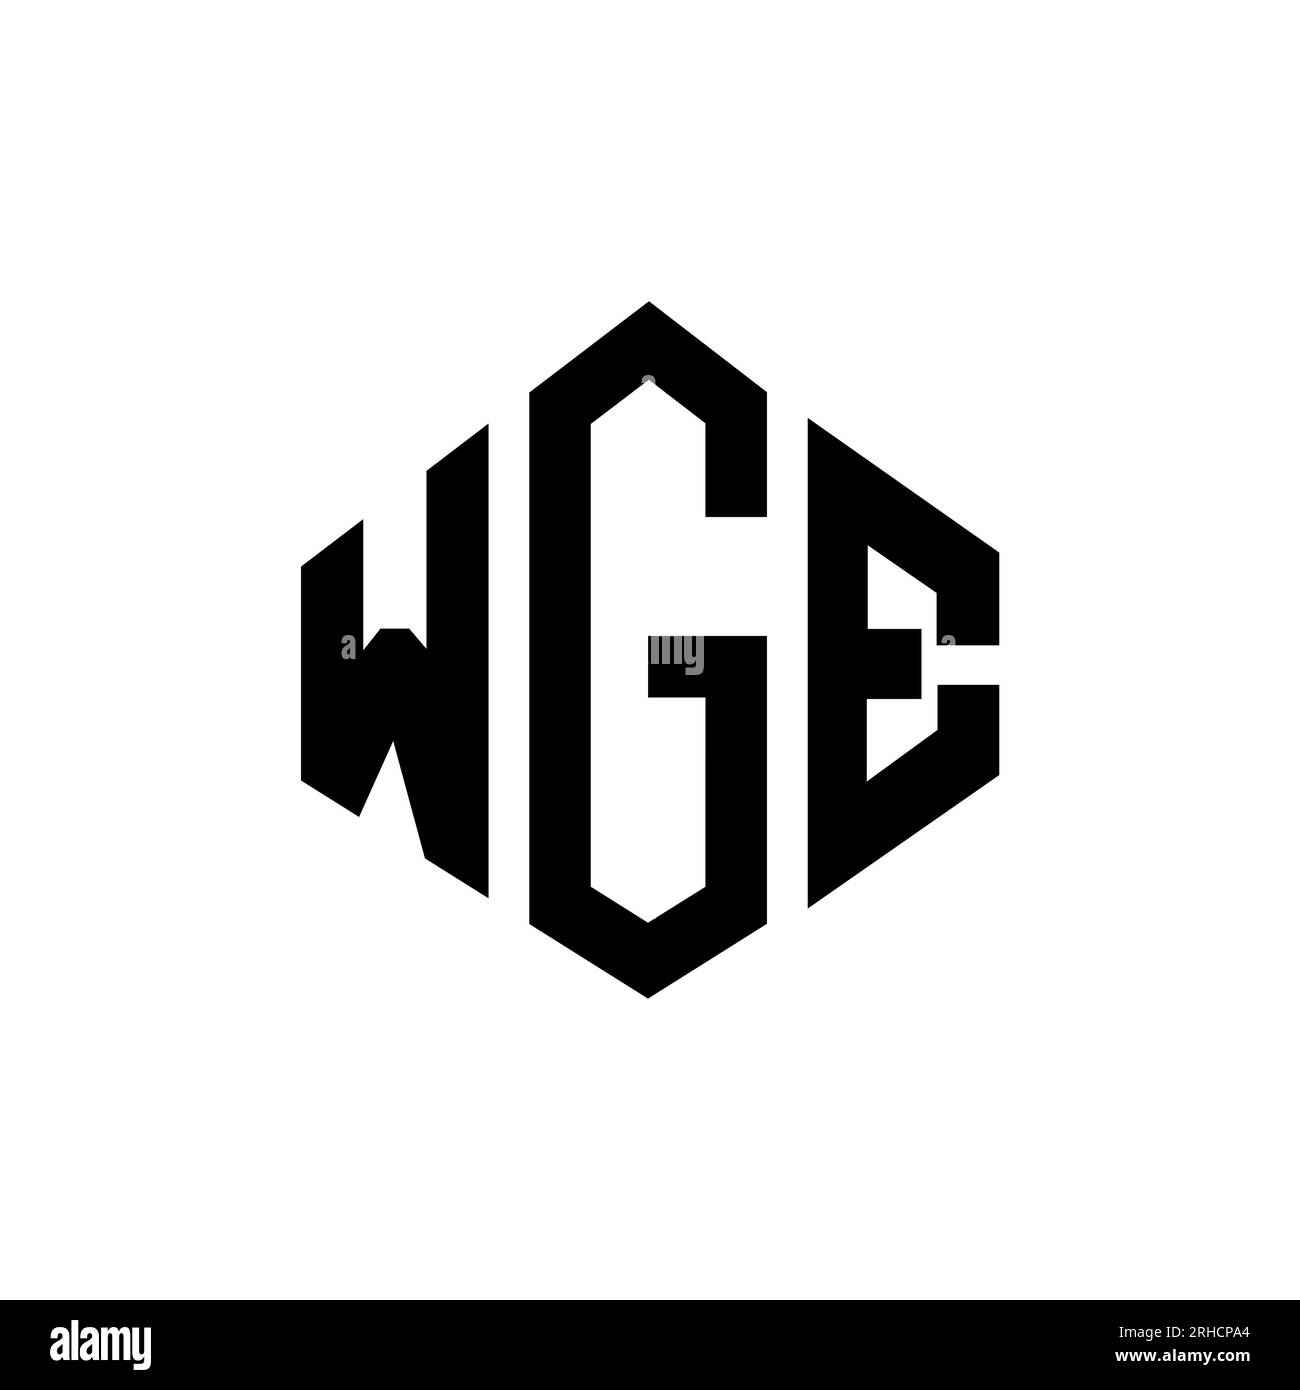 Diseño De Logotipo De Carta Wge Con Forma De Polígono Diseño De Logotipo De Forma De Polígono Y 8959